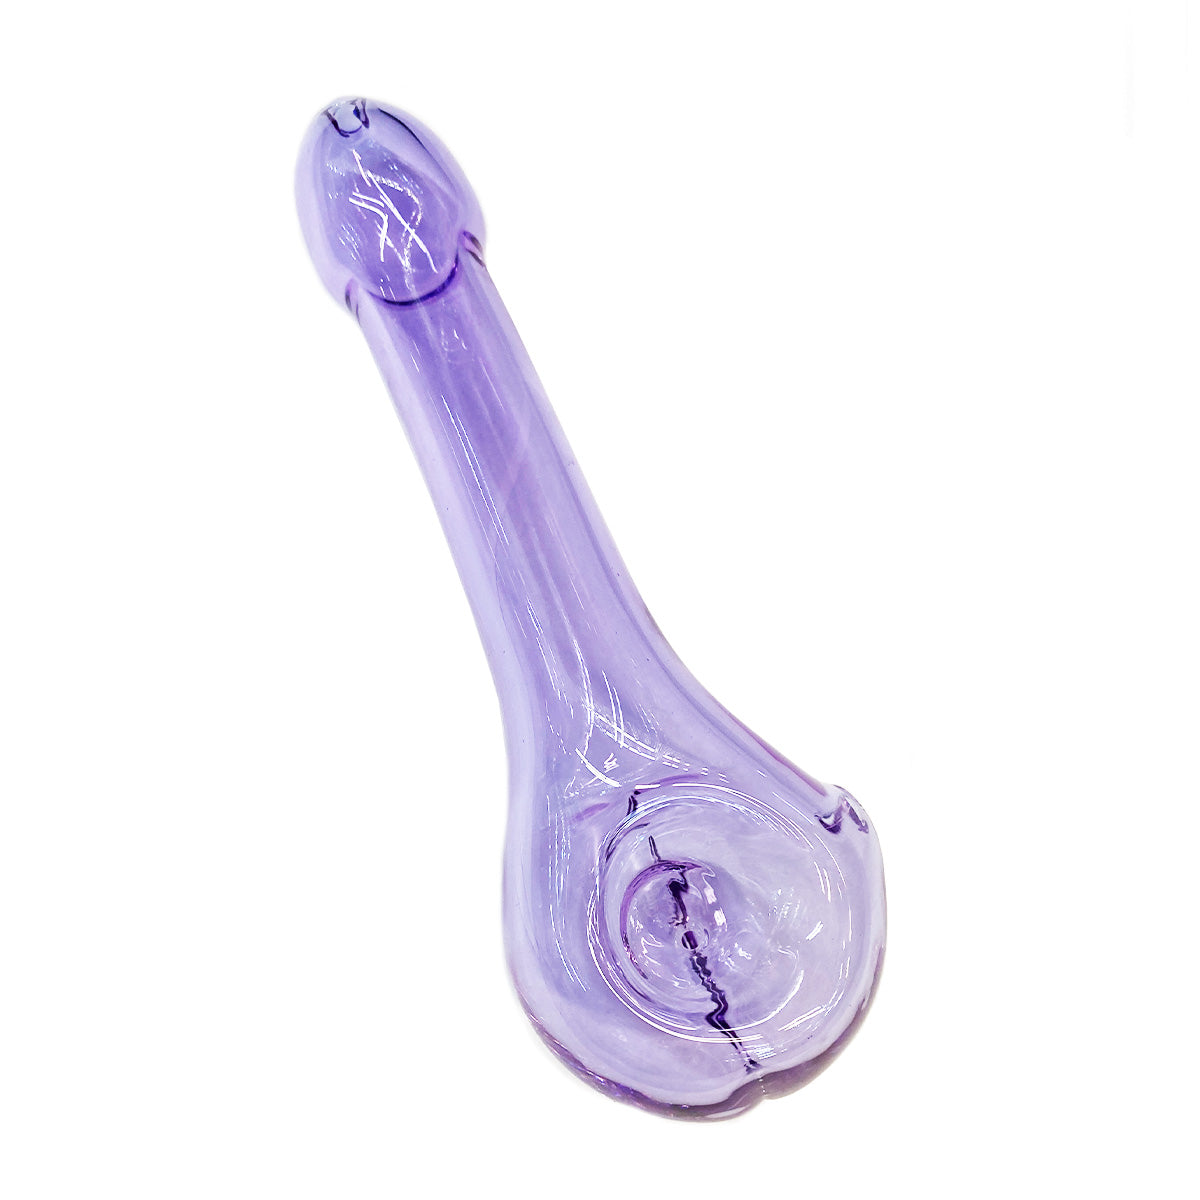 6" Purple Tube Penis Hand Pipe Spoon